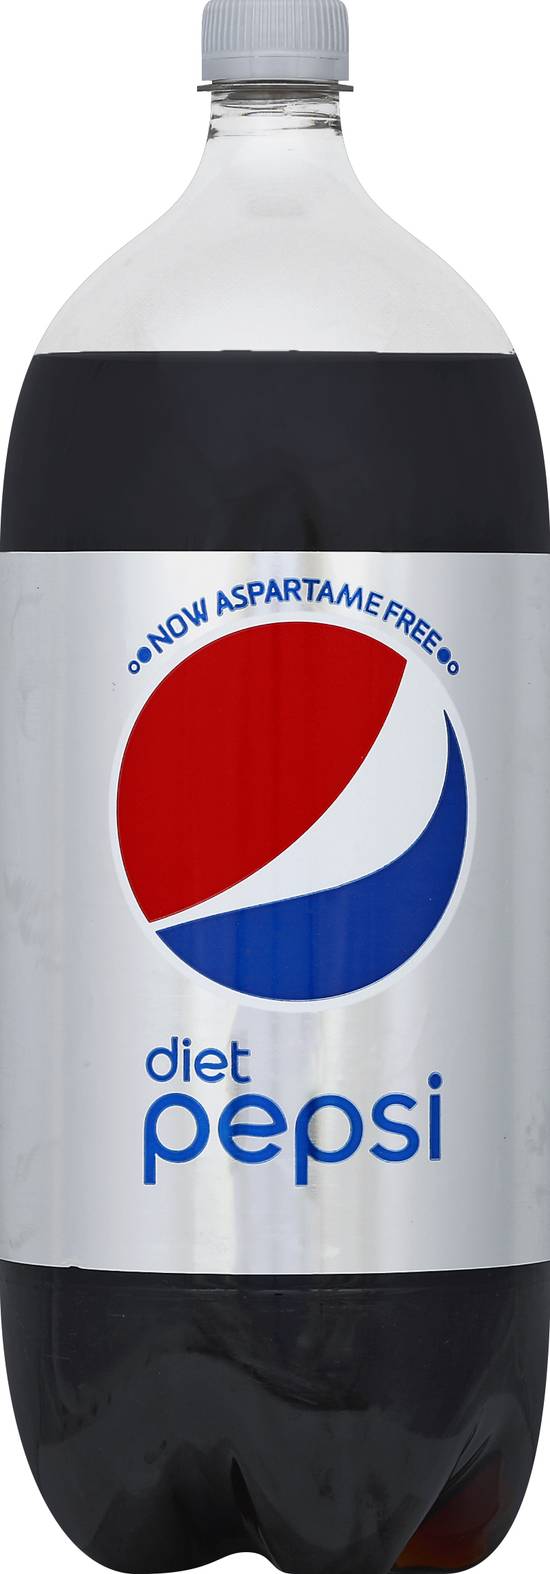 Pepsi Diet Cola Soda (2 L)